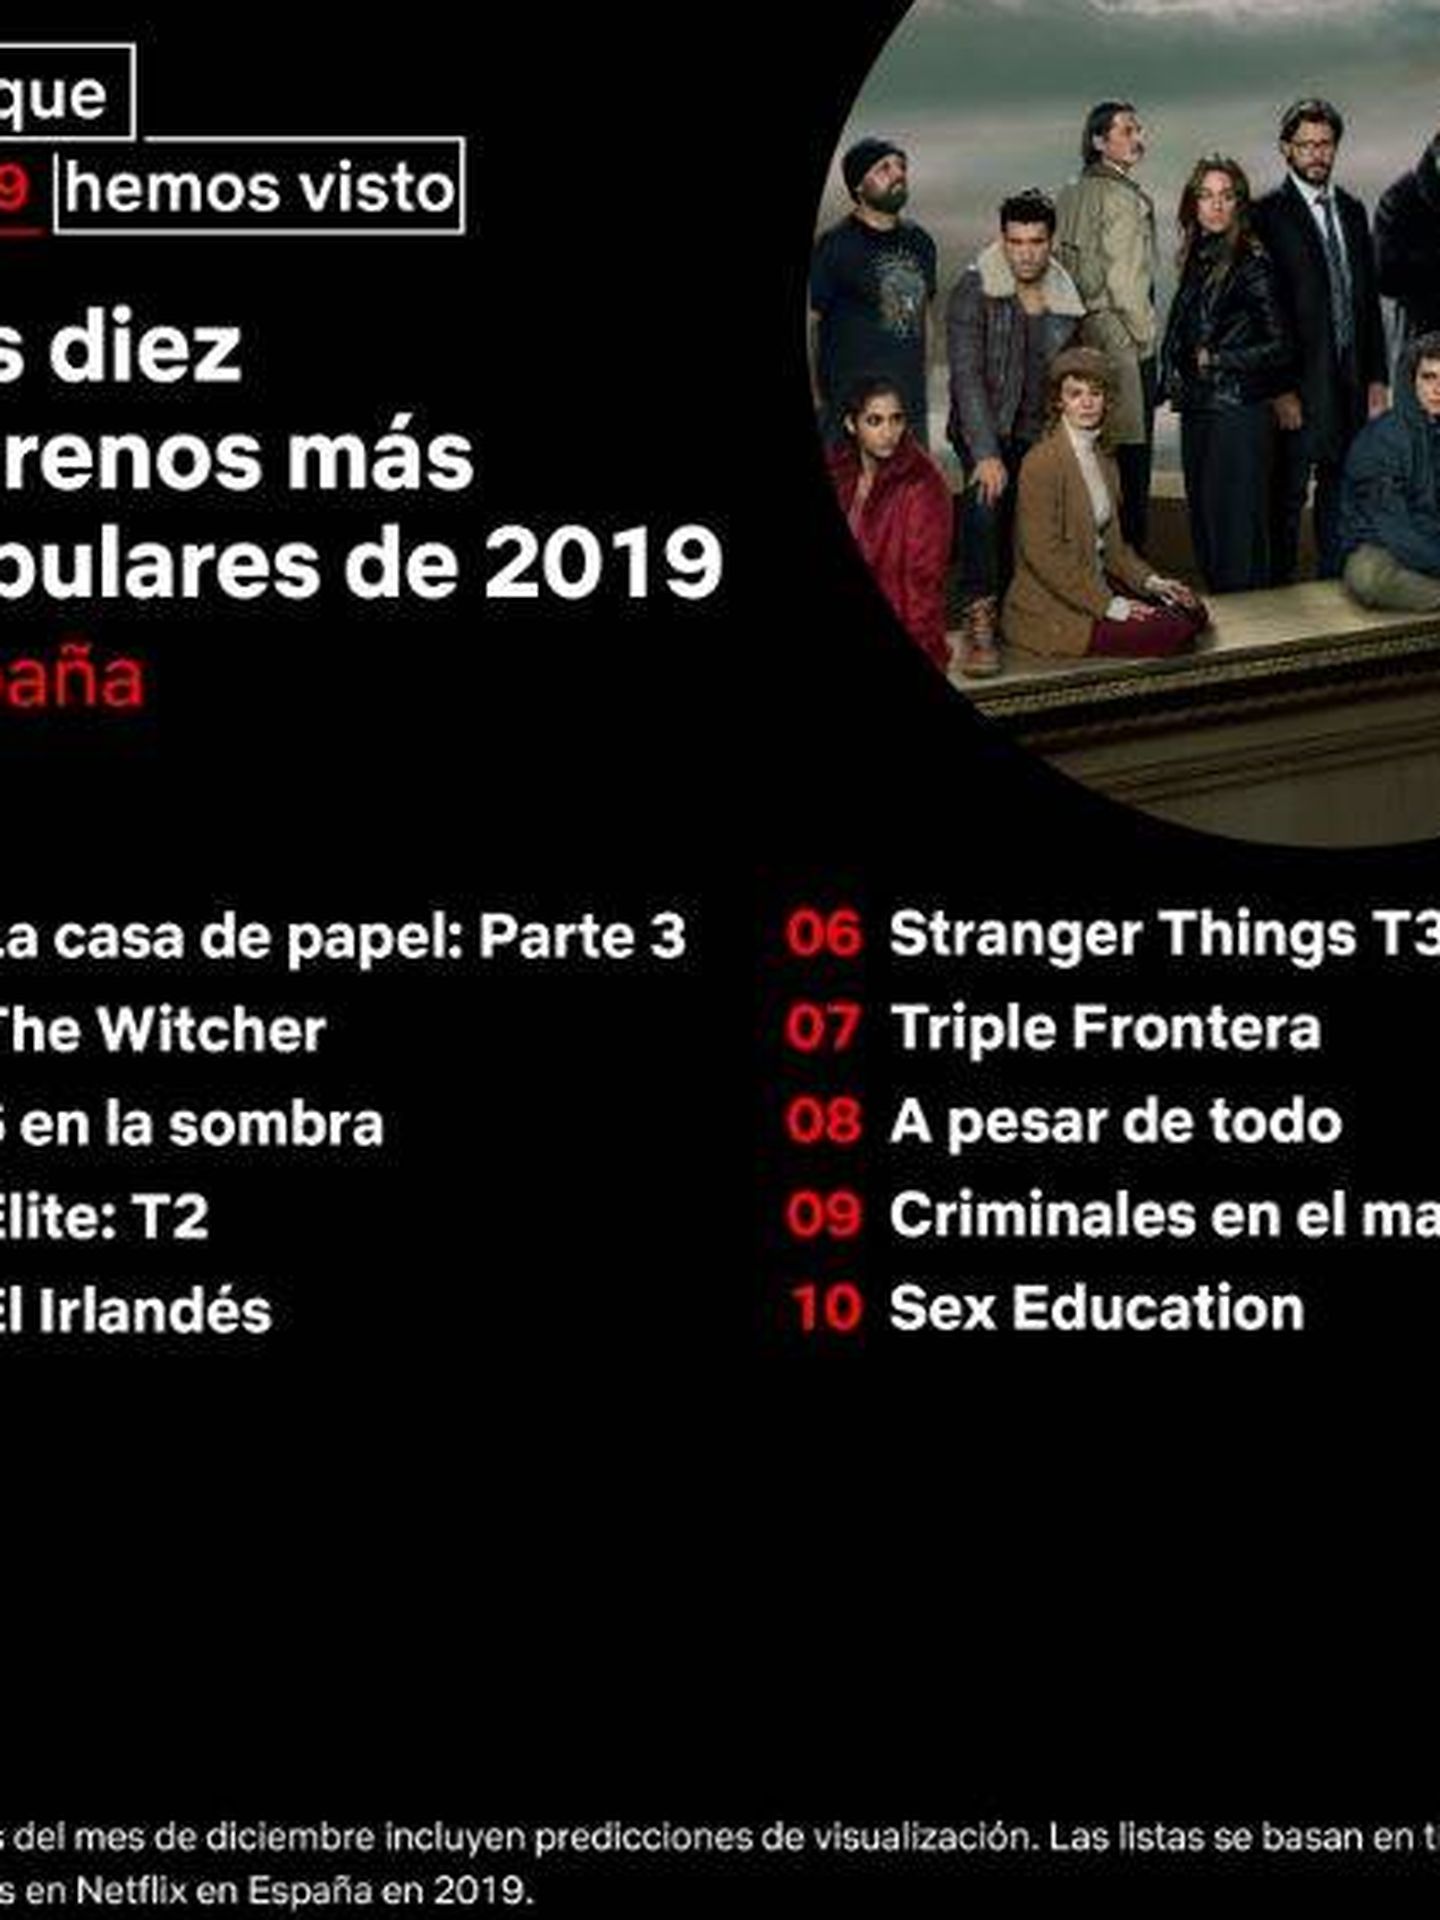 Estrenos más populares de Netflix en España. (Twitter)